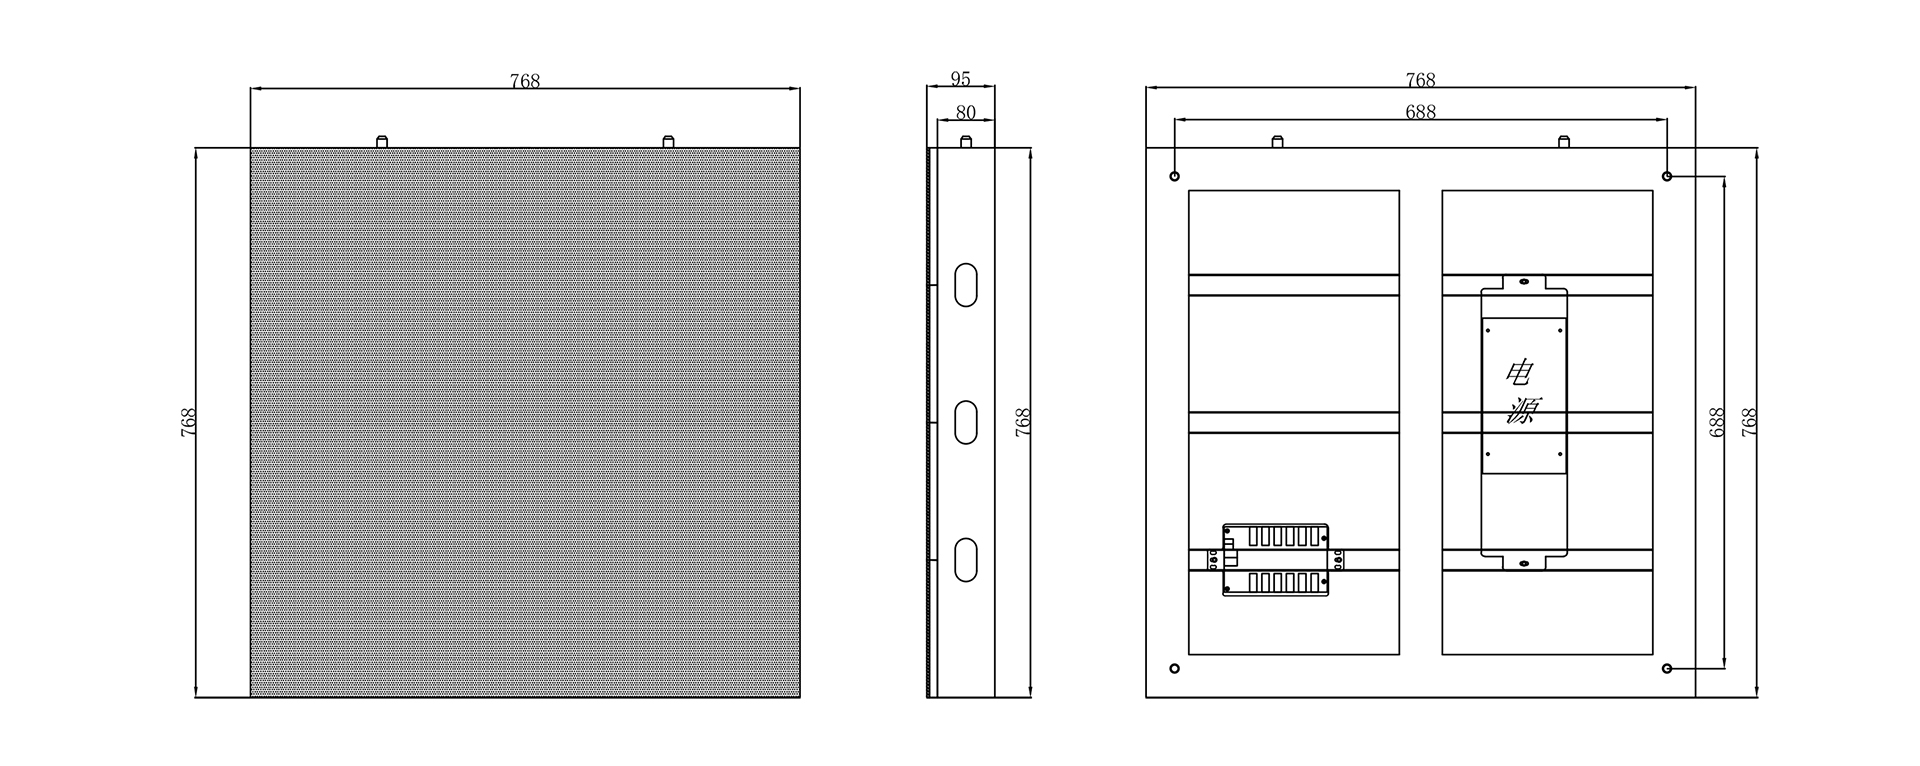 室内固装K62系列（P6)箱体示意图-Model.jpg